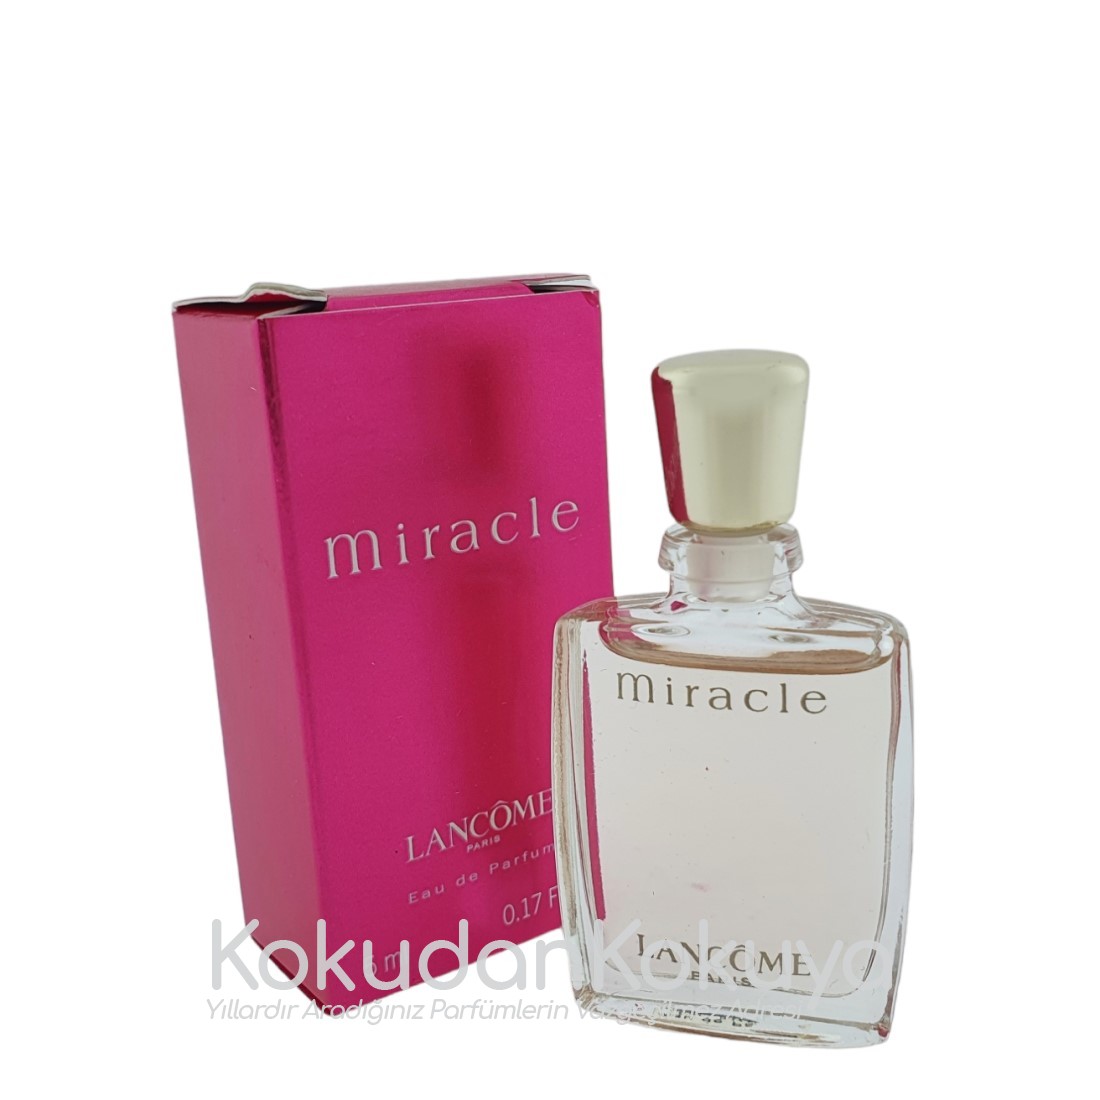 LANCOME Miracle (Vintage) Parfüm Kadın 5ml Minyatür (Mini Perfume) Dökme 